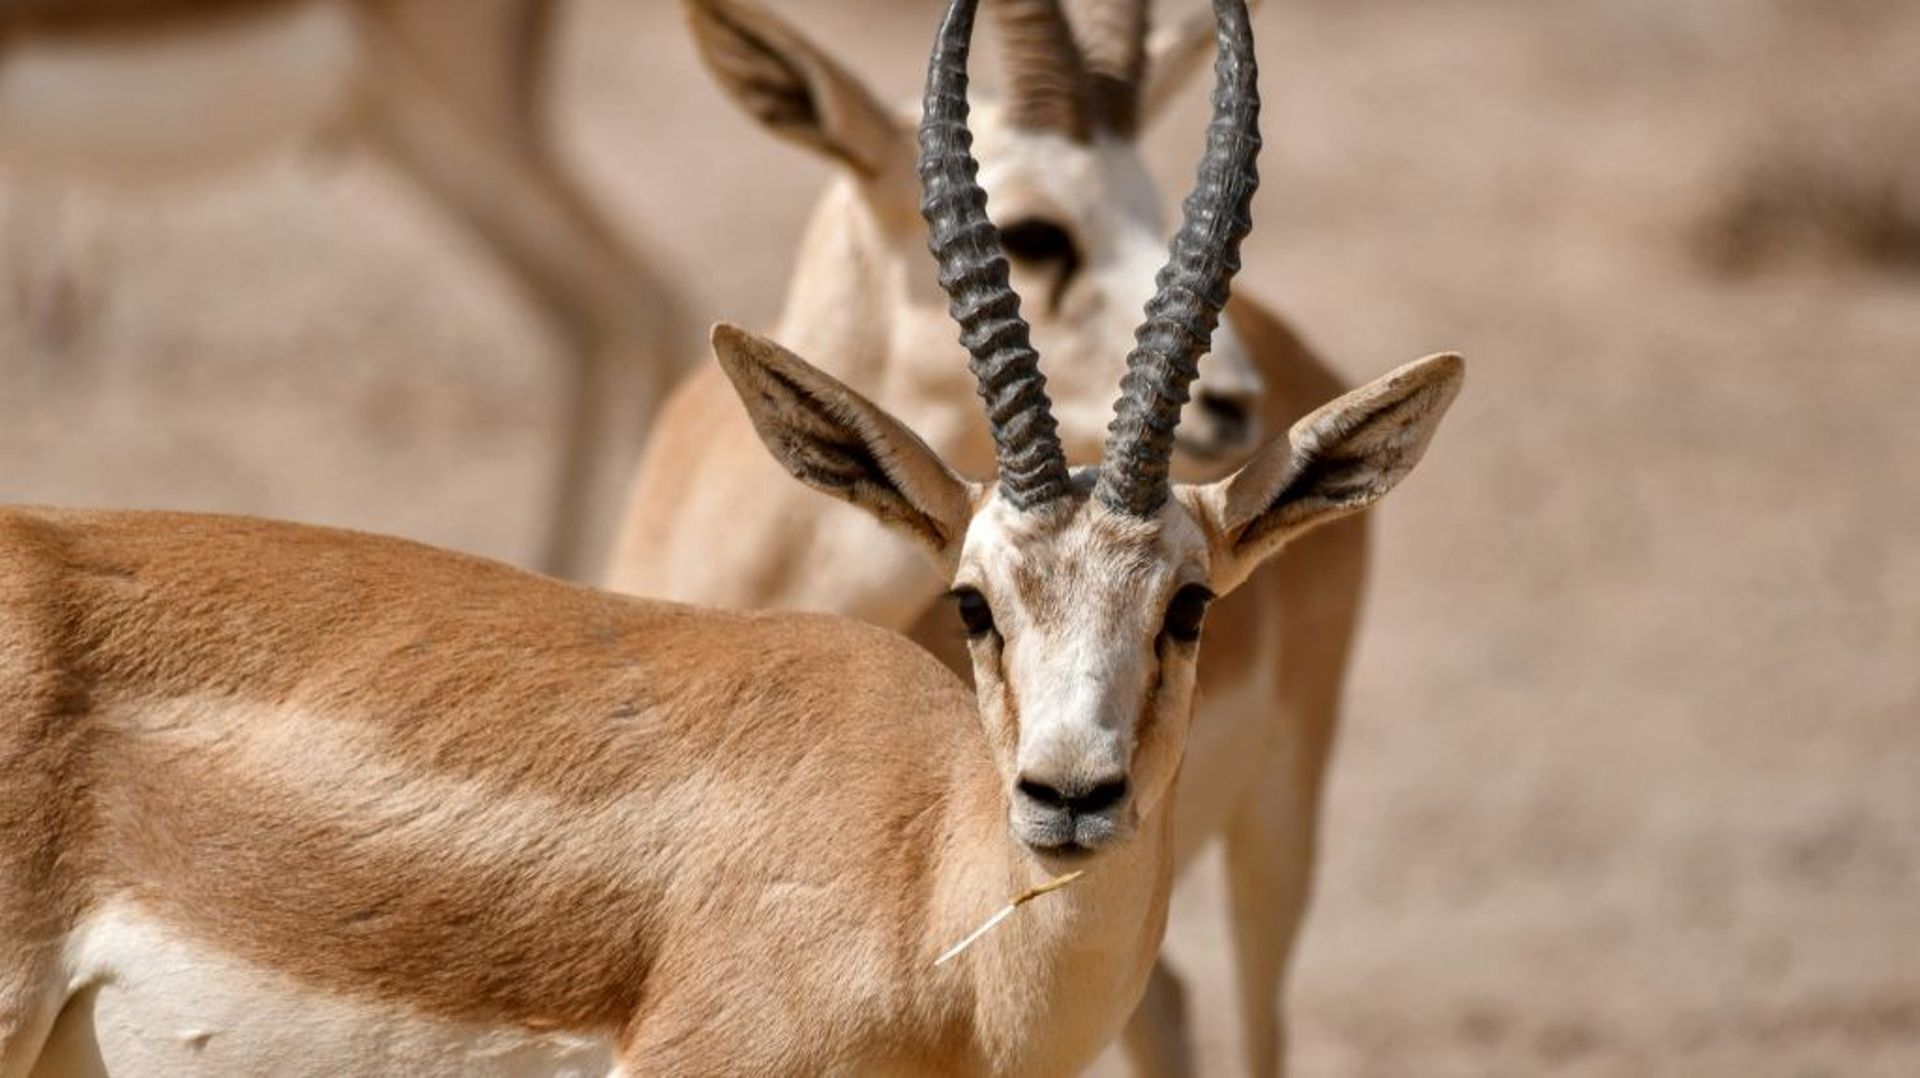 Des gazelles de Rhim dans la réserve de Sawa, le 8 juin 2022 en Irak